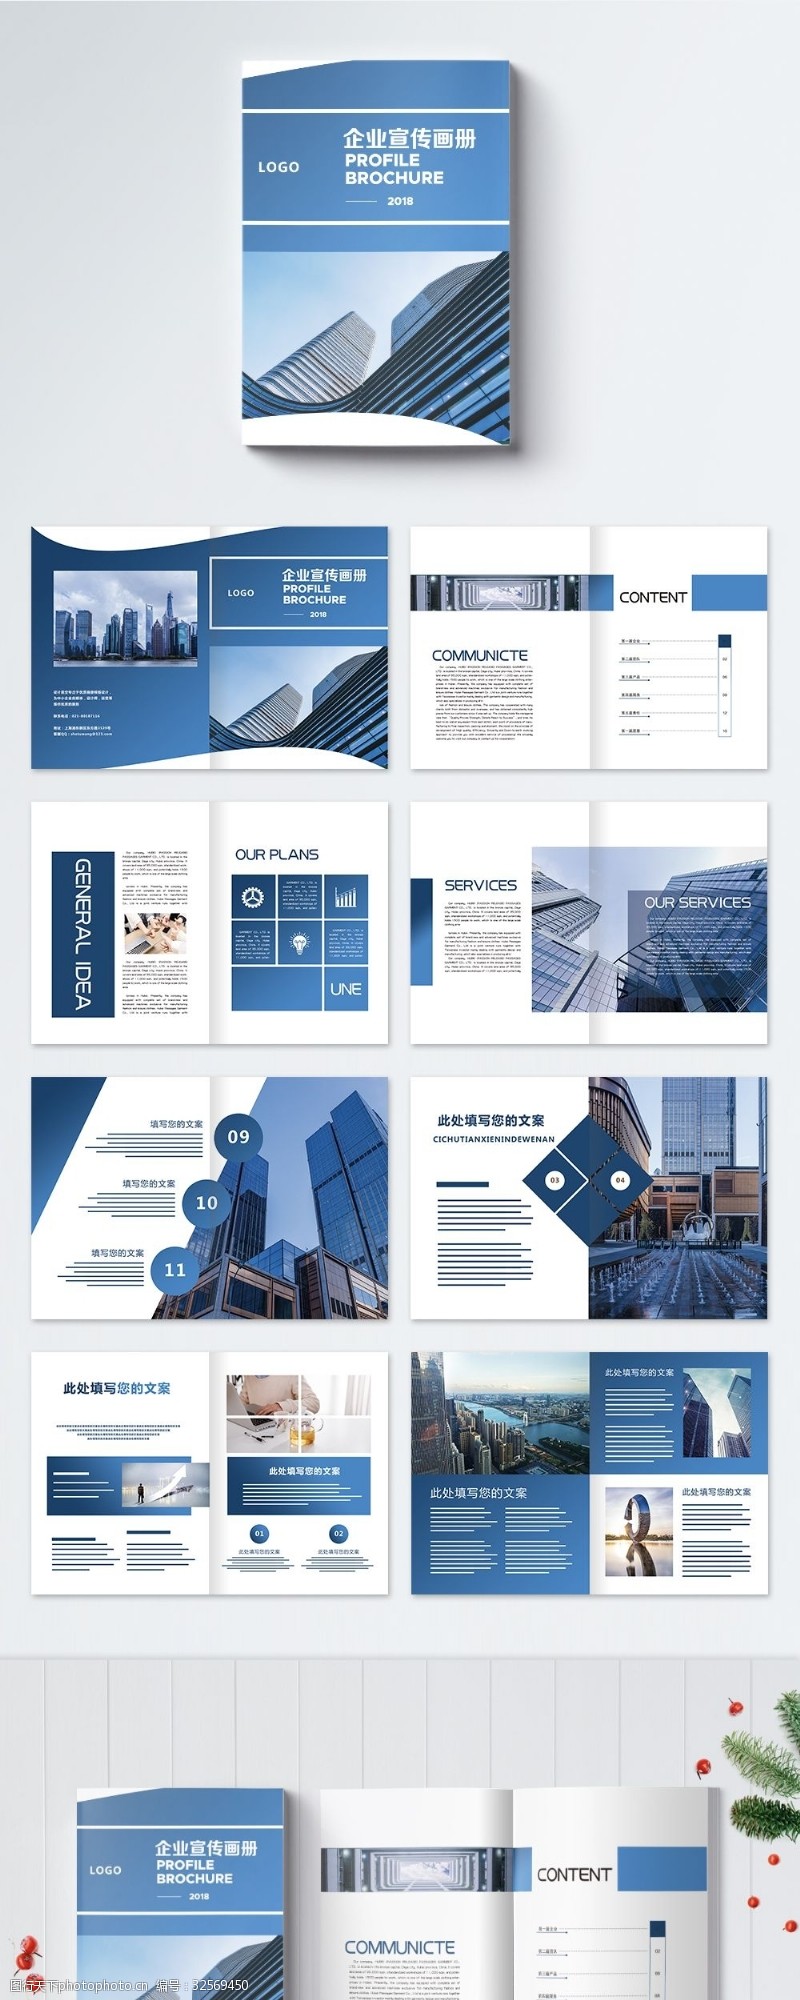 内页设计蓝色渐变高端大气企业画册